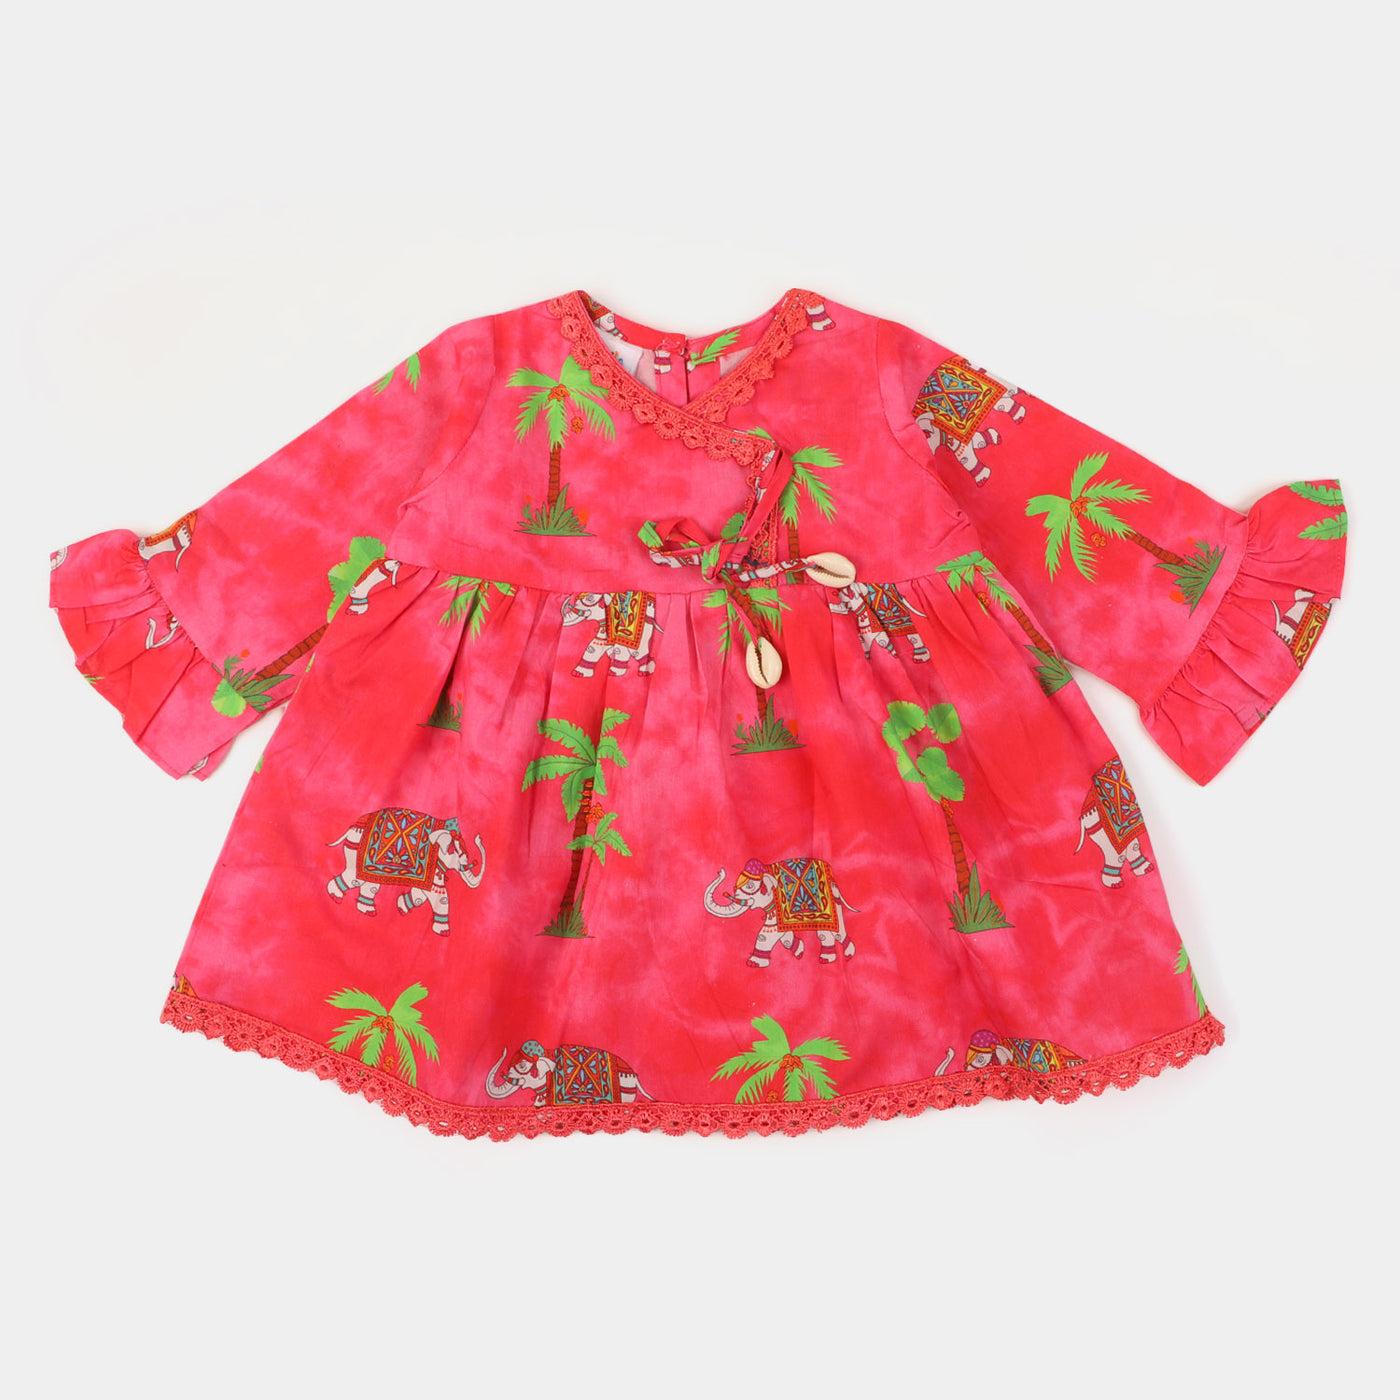 Infant Girls Cotton Digital Print 2Pcs Suit Jungle Elephant - Hot Pink